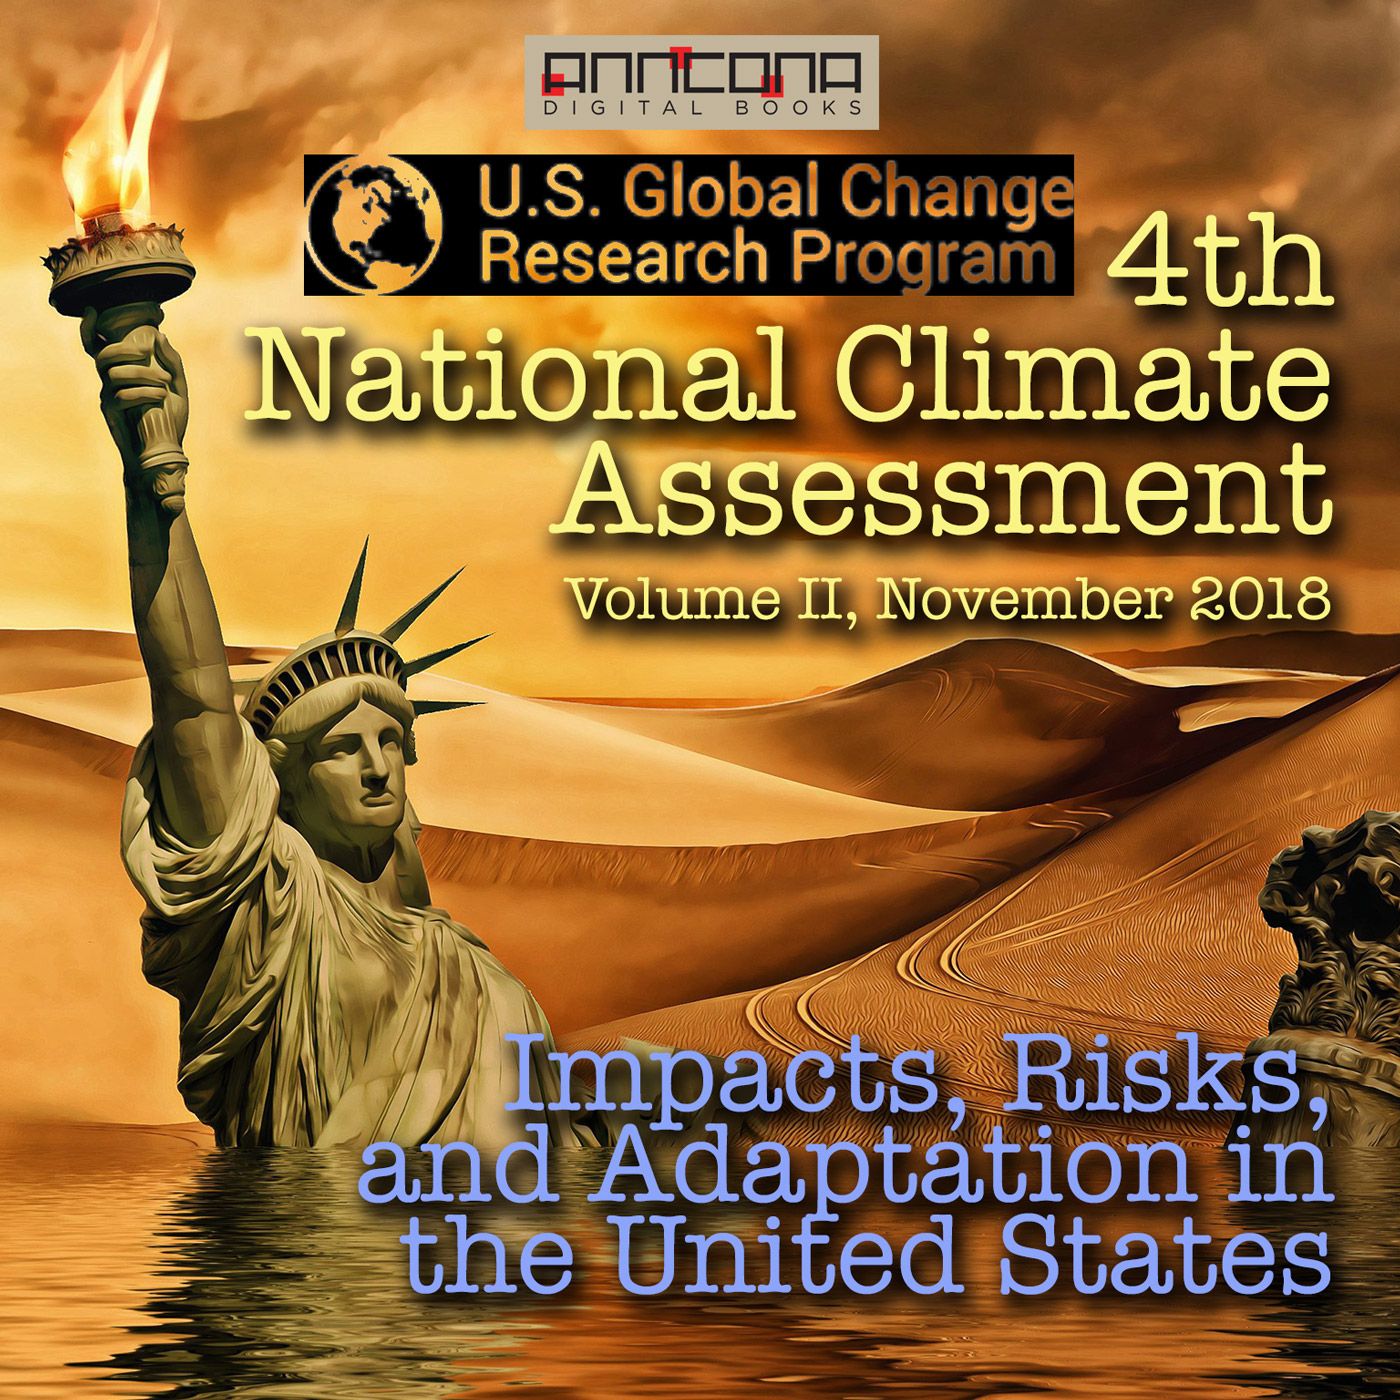 4th National Climate Assessment, Volume II, lydbog af U.S. Global Change Research Program